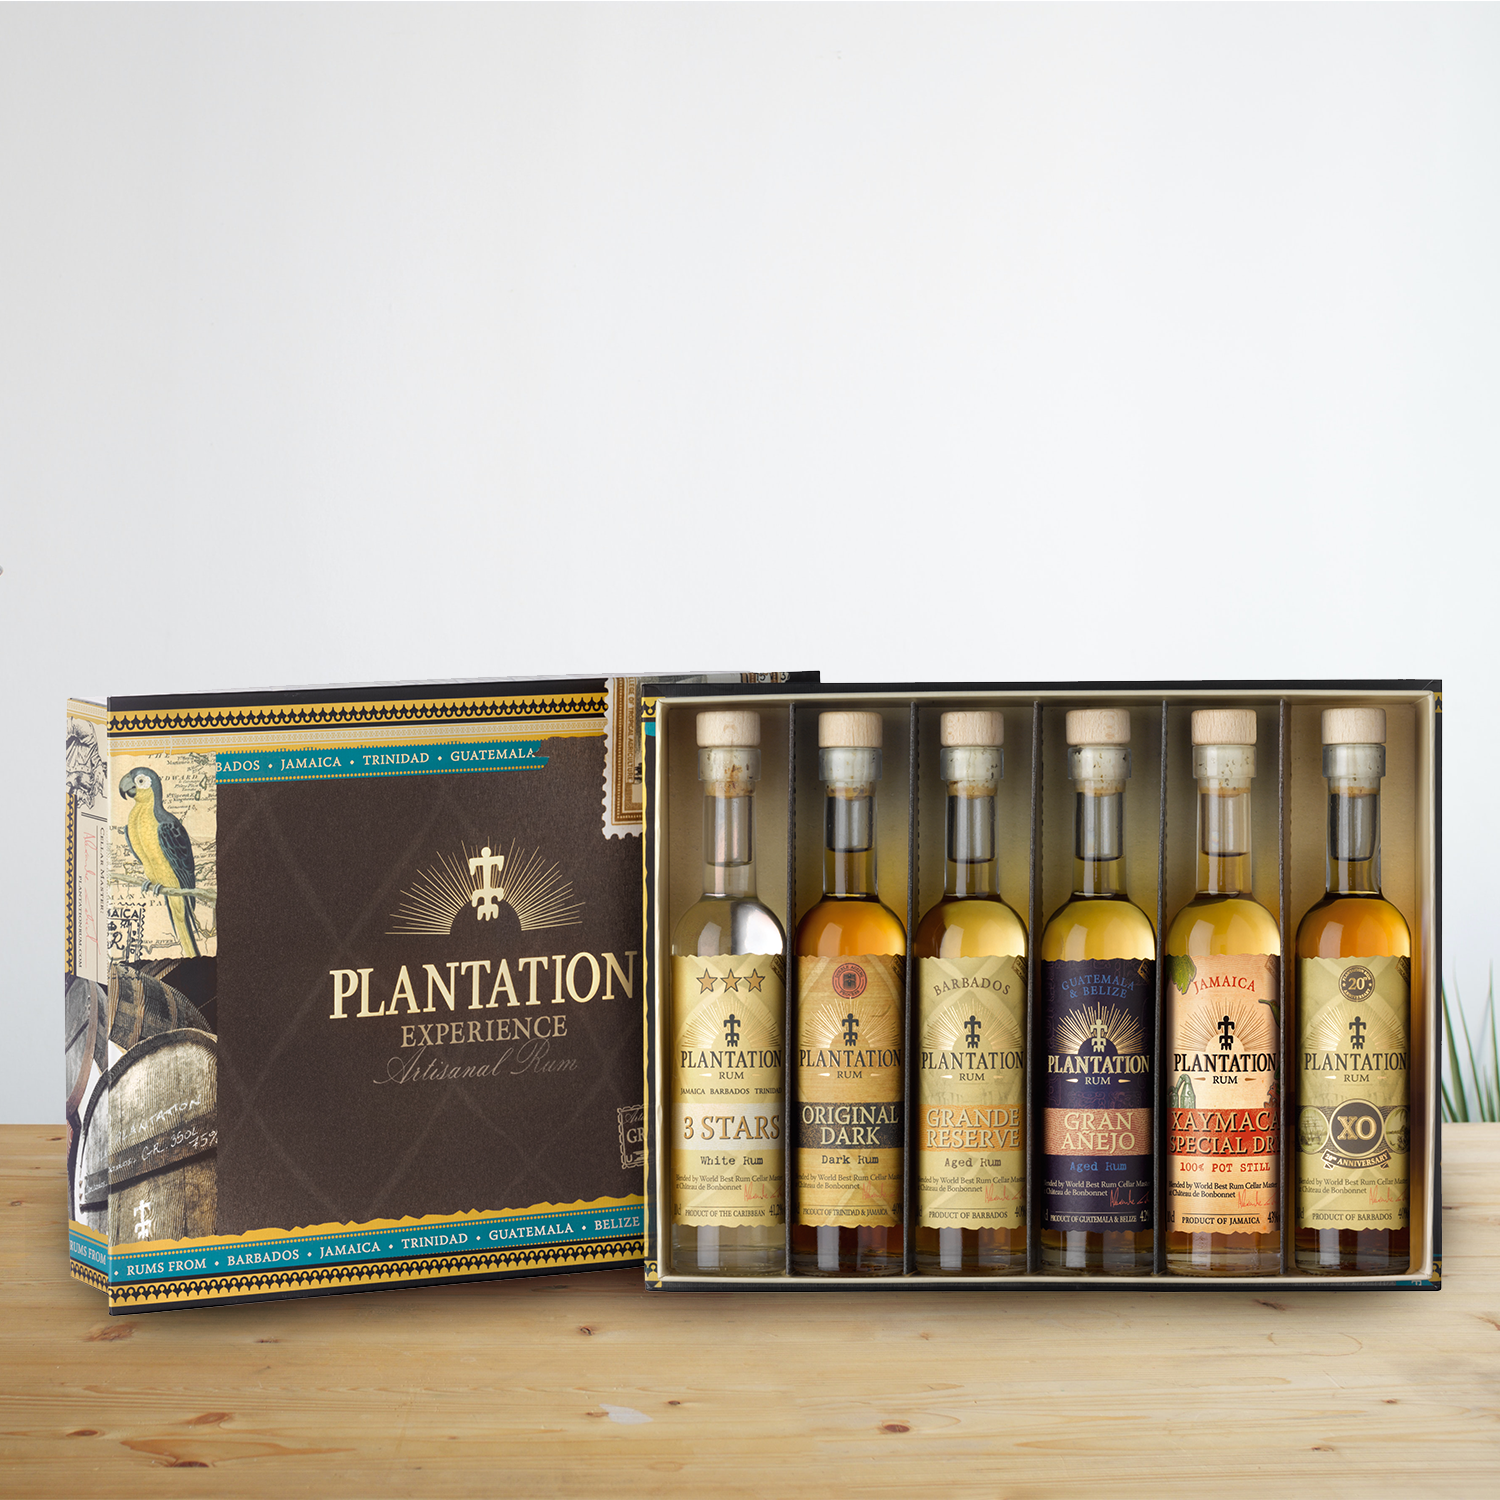 Plantation Experience Box